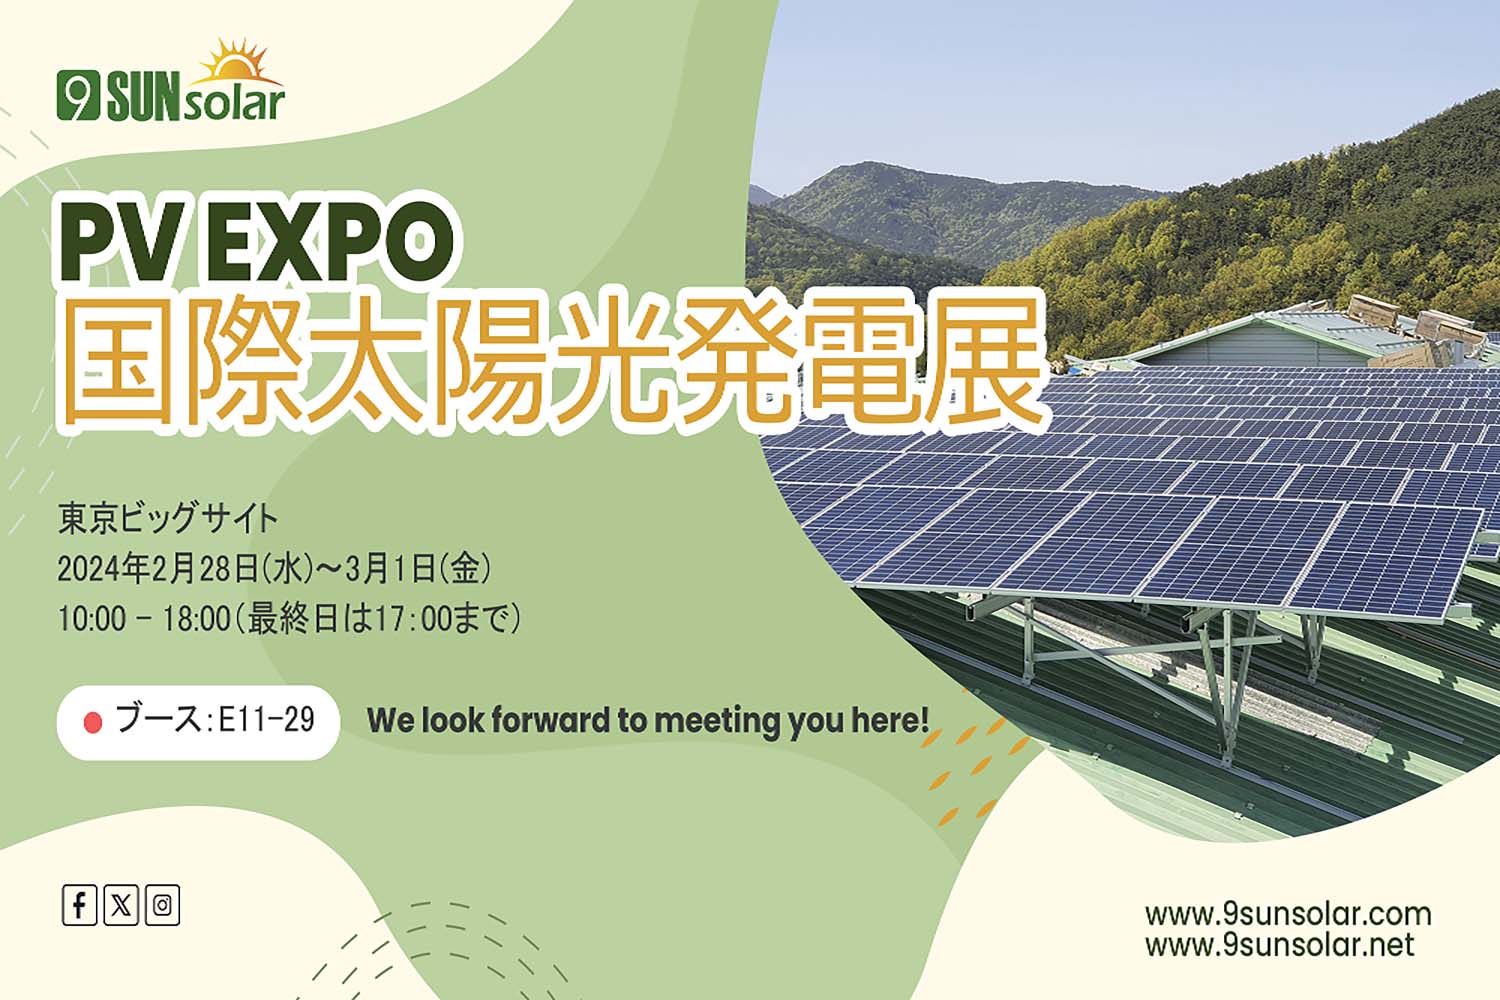 Invito alla mostra | Settimana dell'energia intelligente a Tokyo